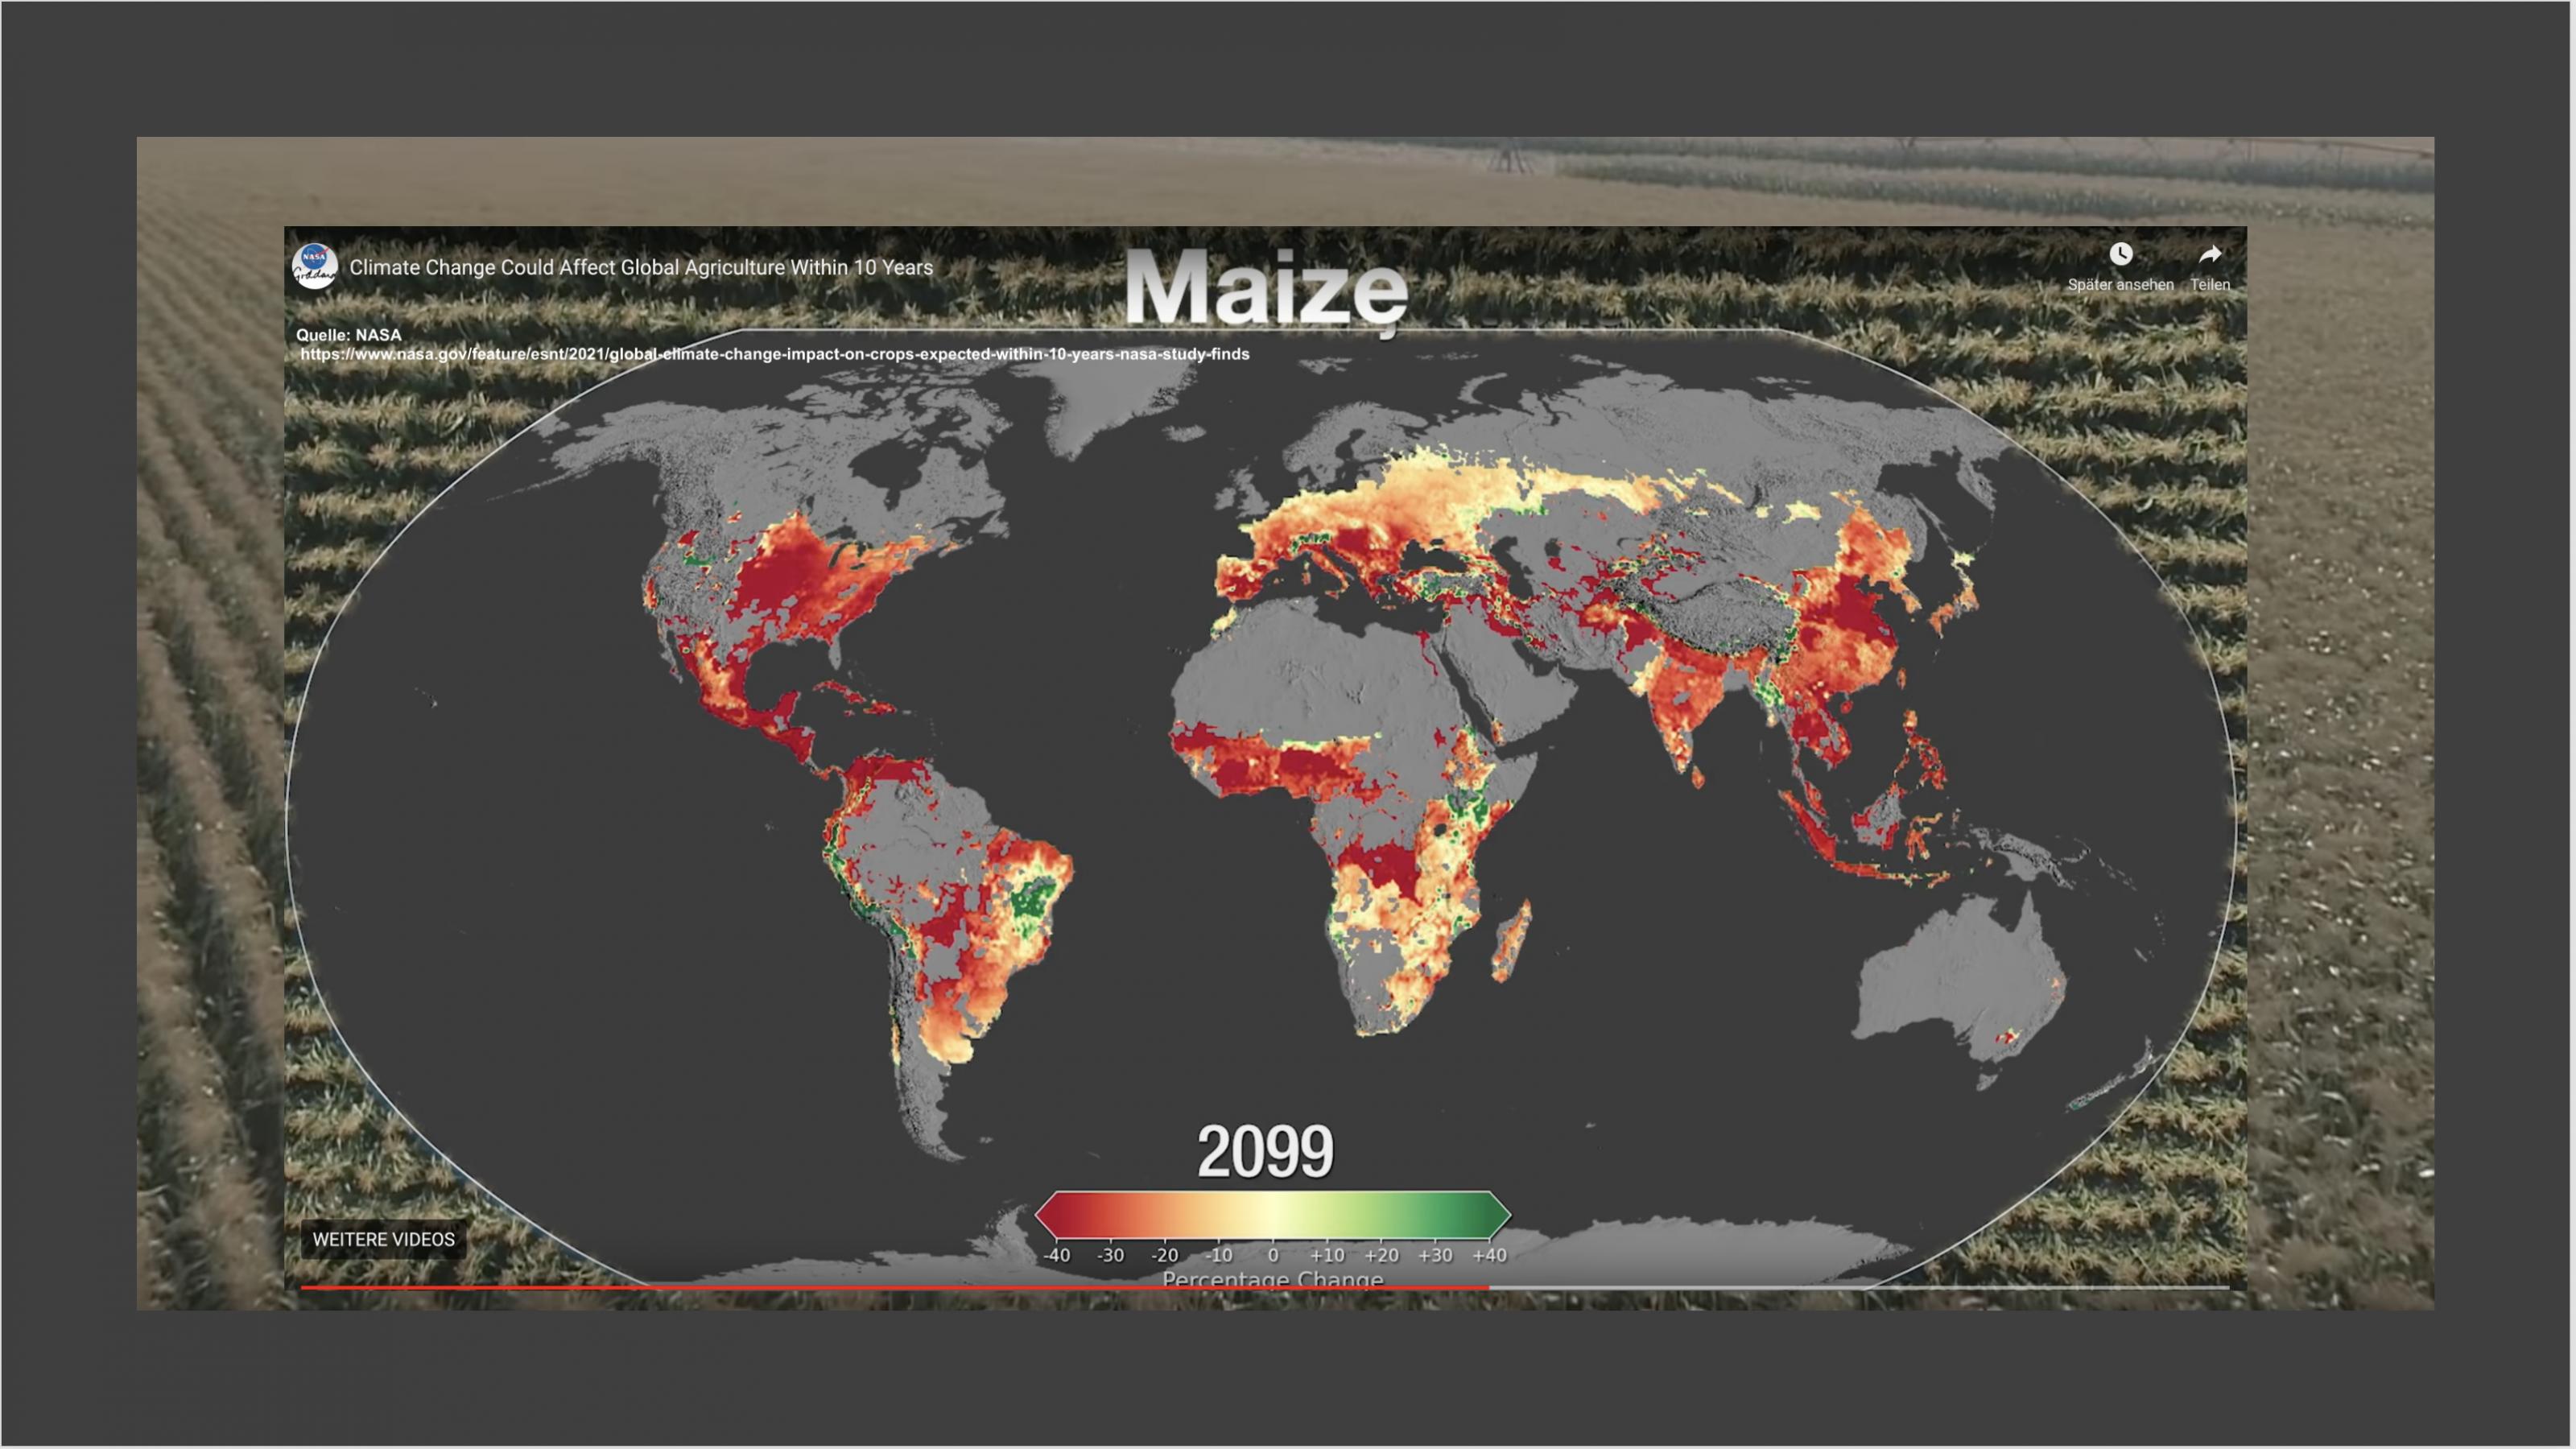 Bearbeiteter Screenshot aus einem NASA-Video, das Ernteeinbußen von Mais im Jahr 2099 zeigt. Weite Teile Asiens, Afrikas, Südamerikas aber auch der Süden der USA sind rot gefärbt, was starke Verluste bedeutet.